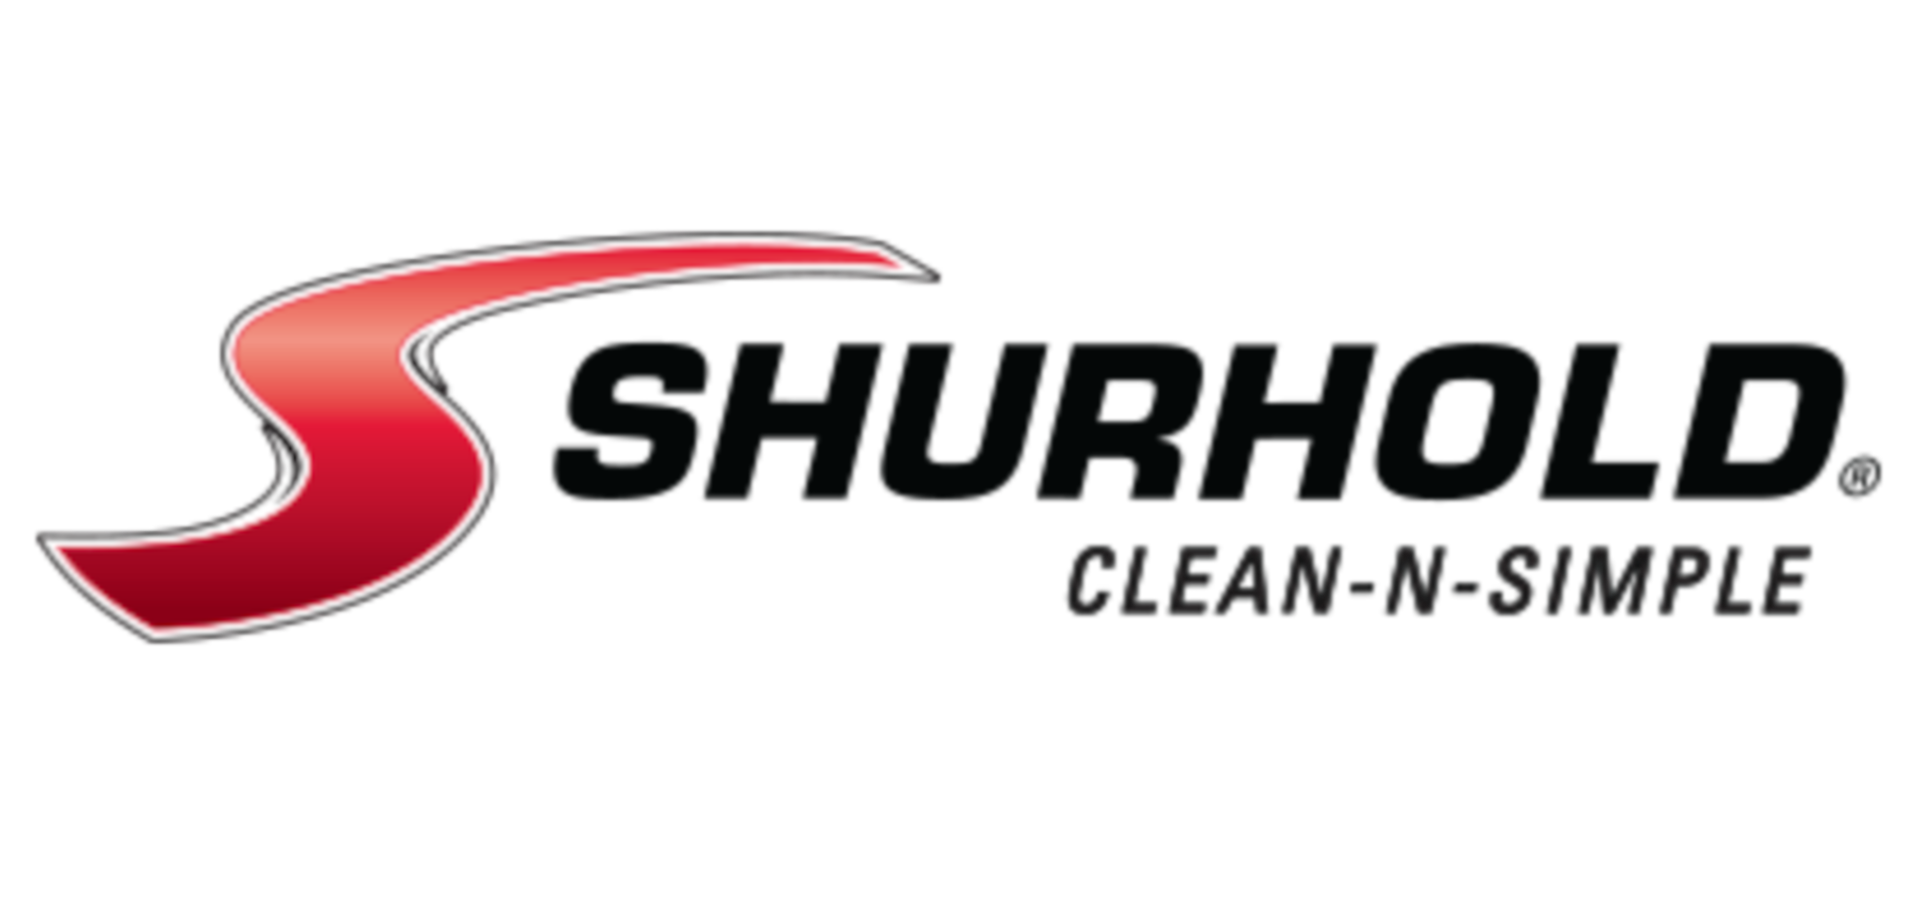 Shurhold Logo